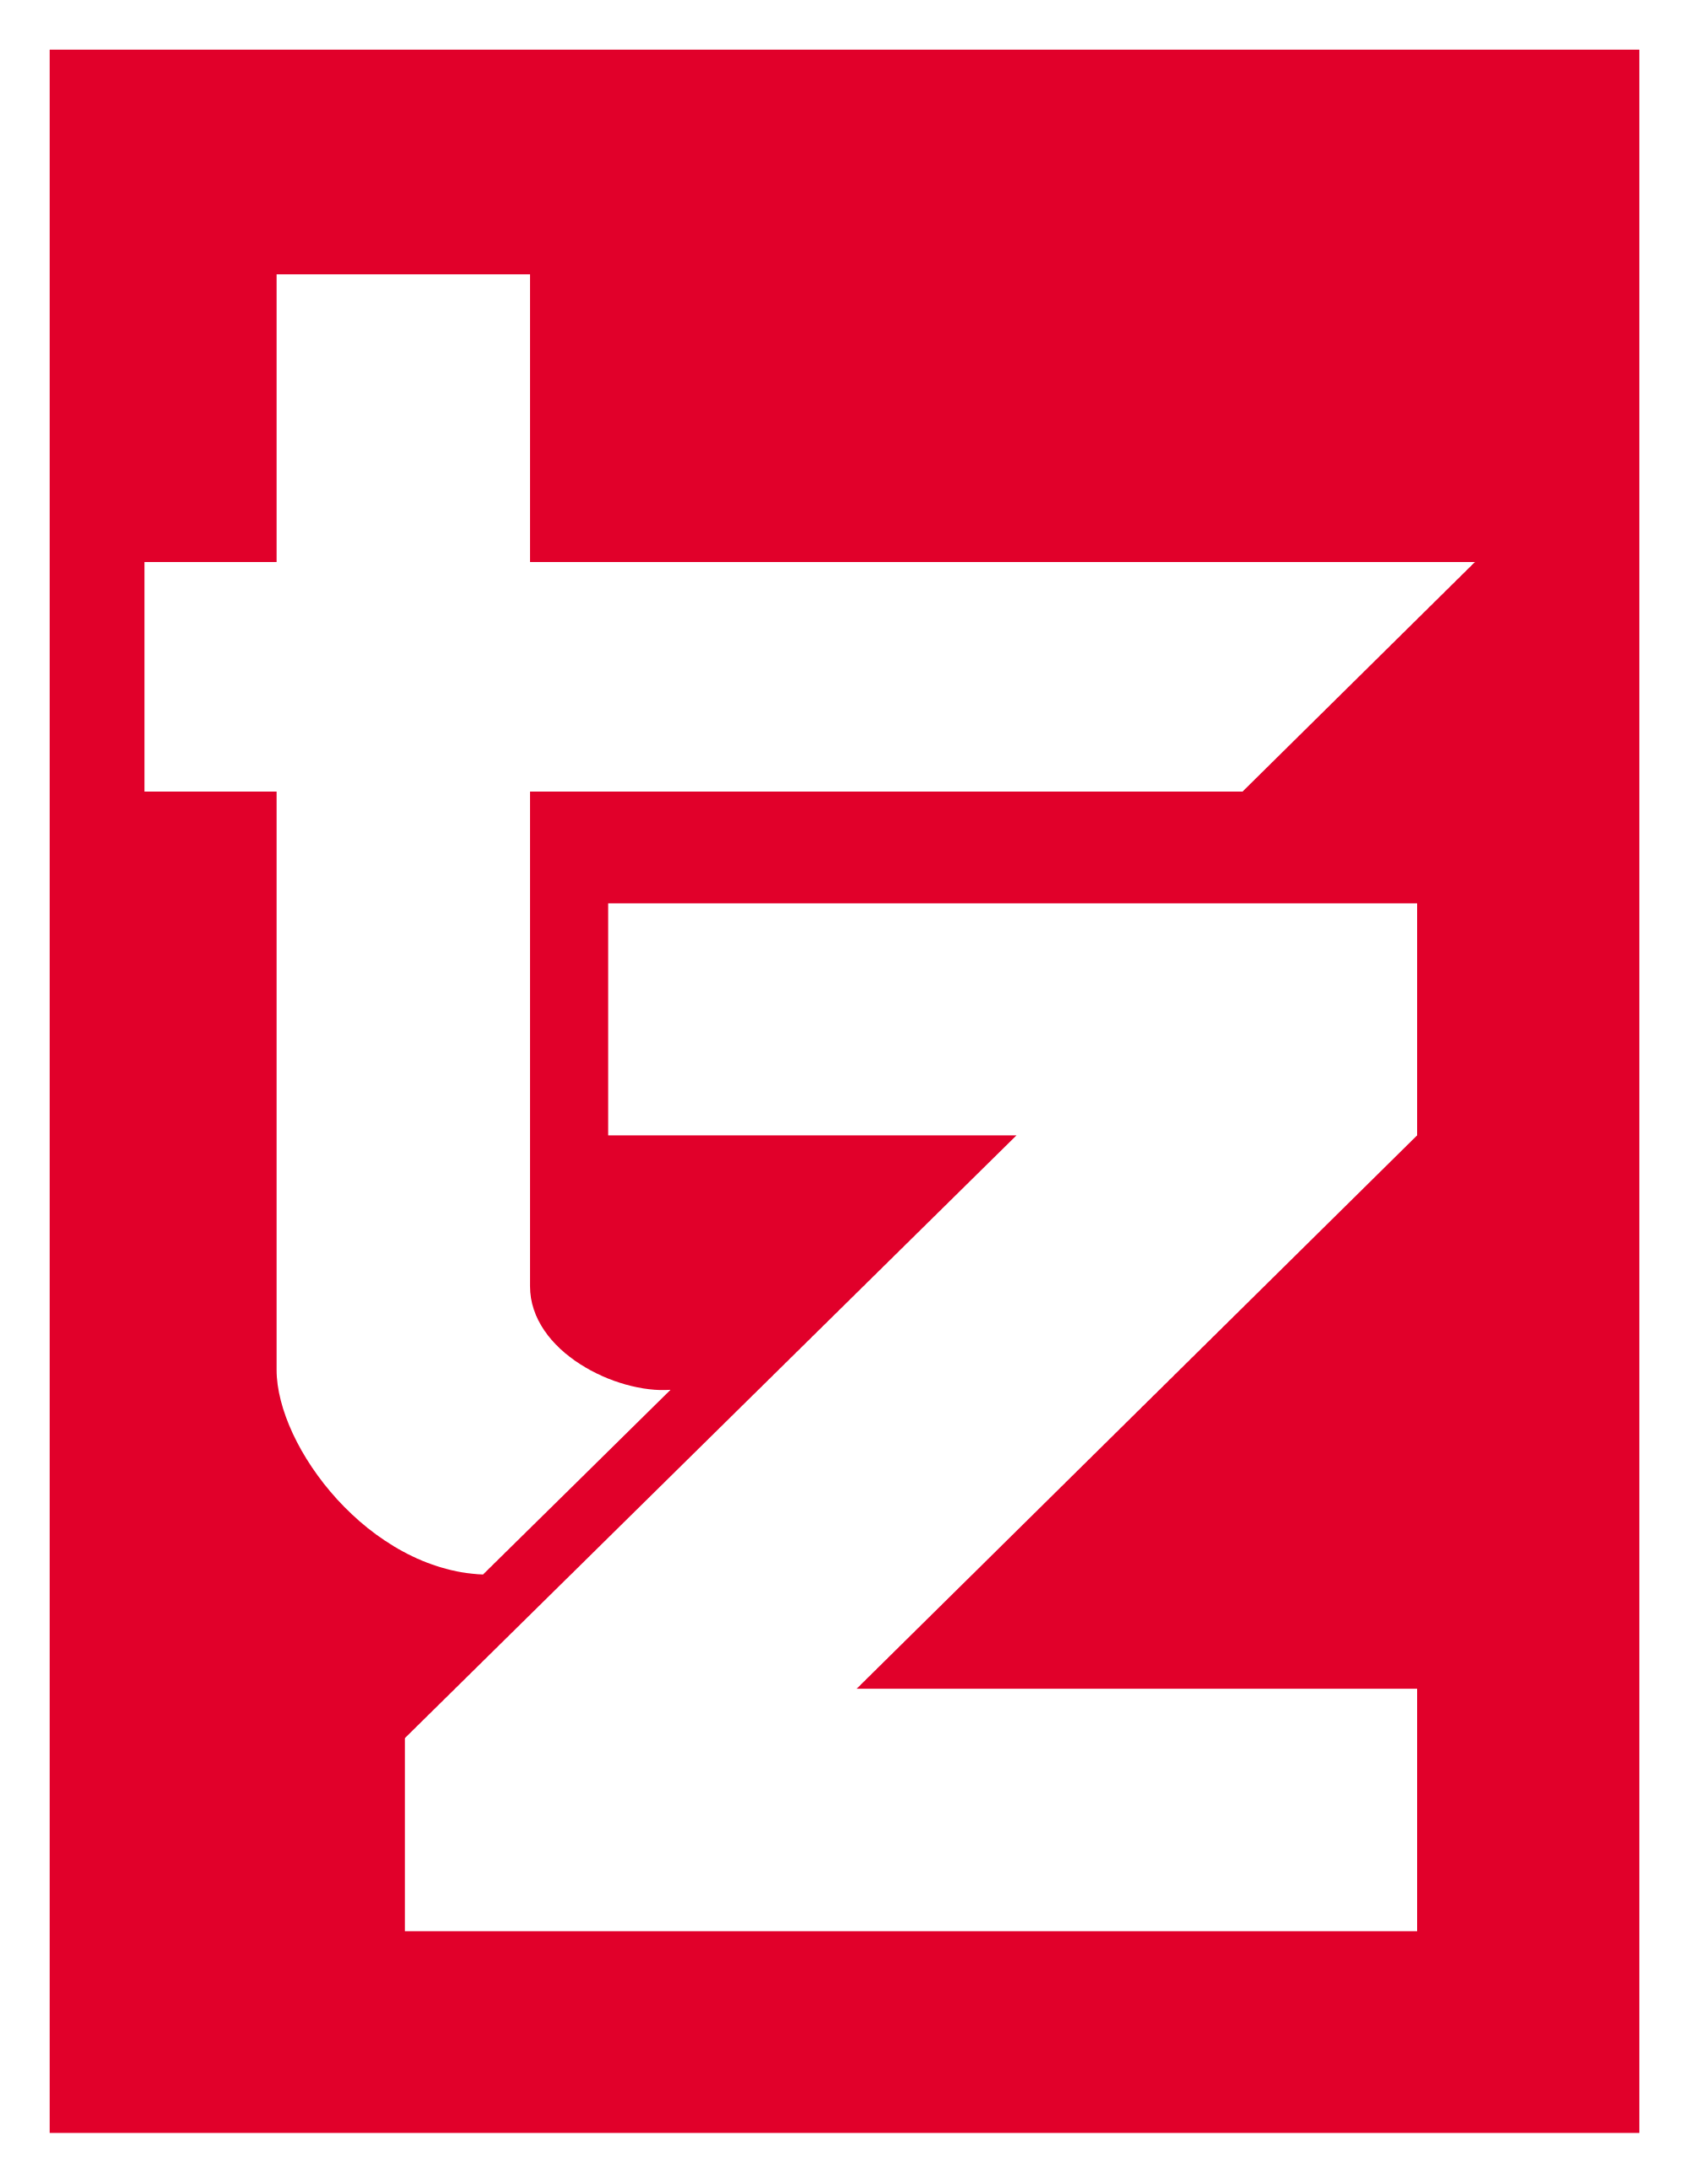 tz-logo